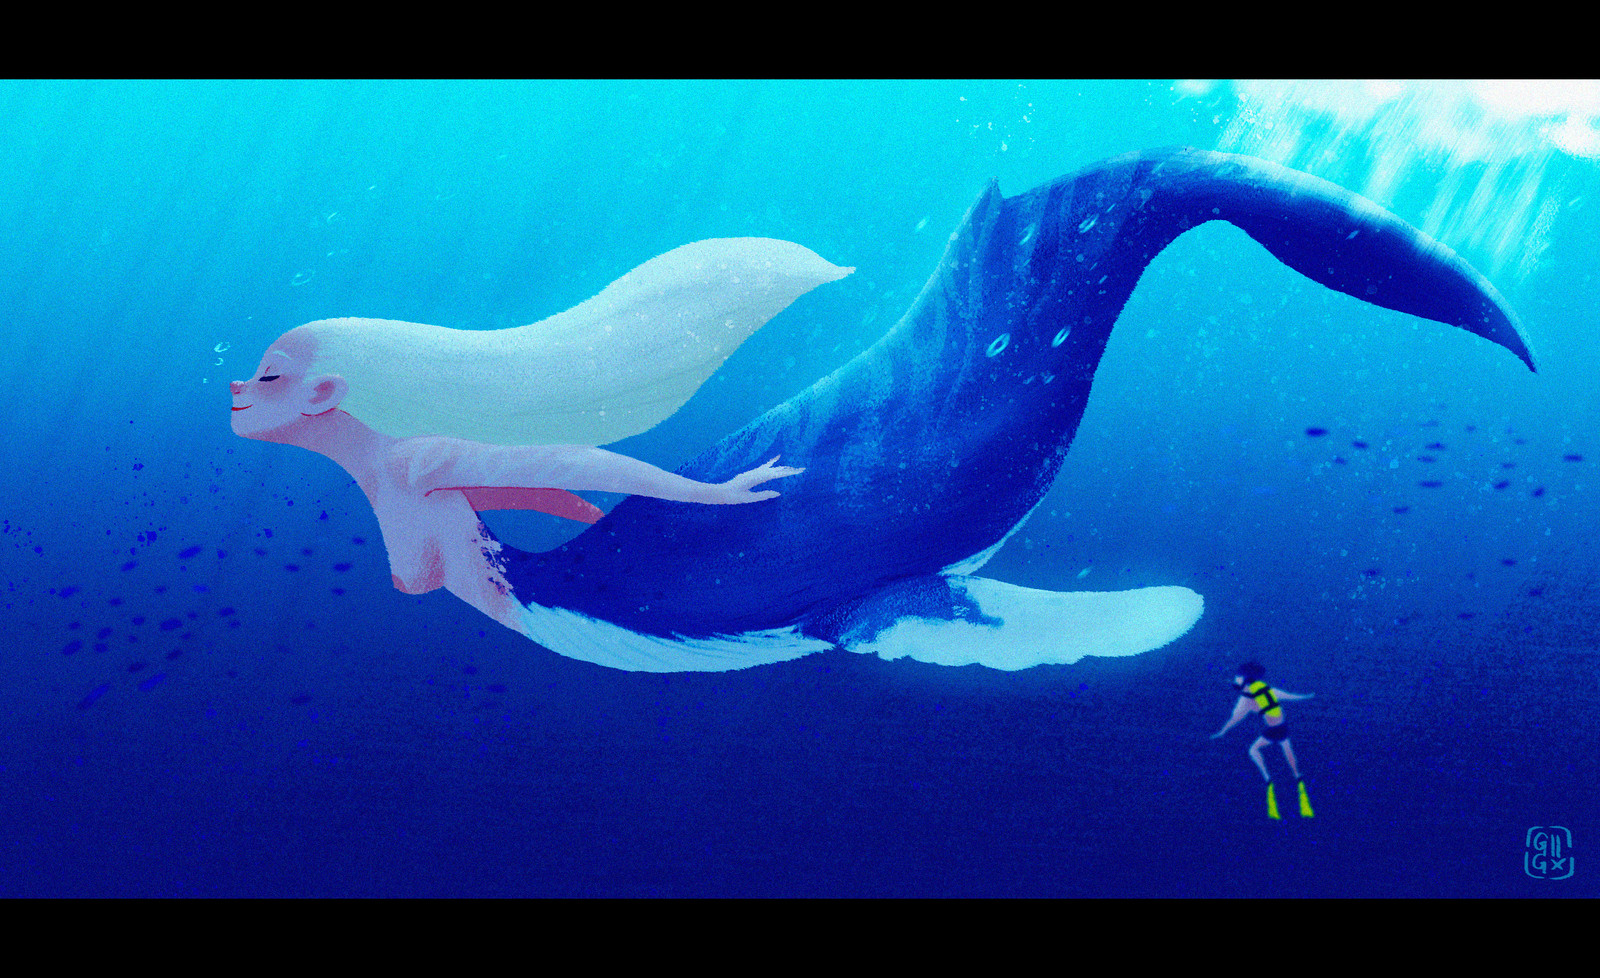 The Humpback Whale Mermaid.